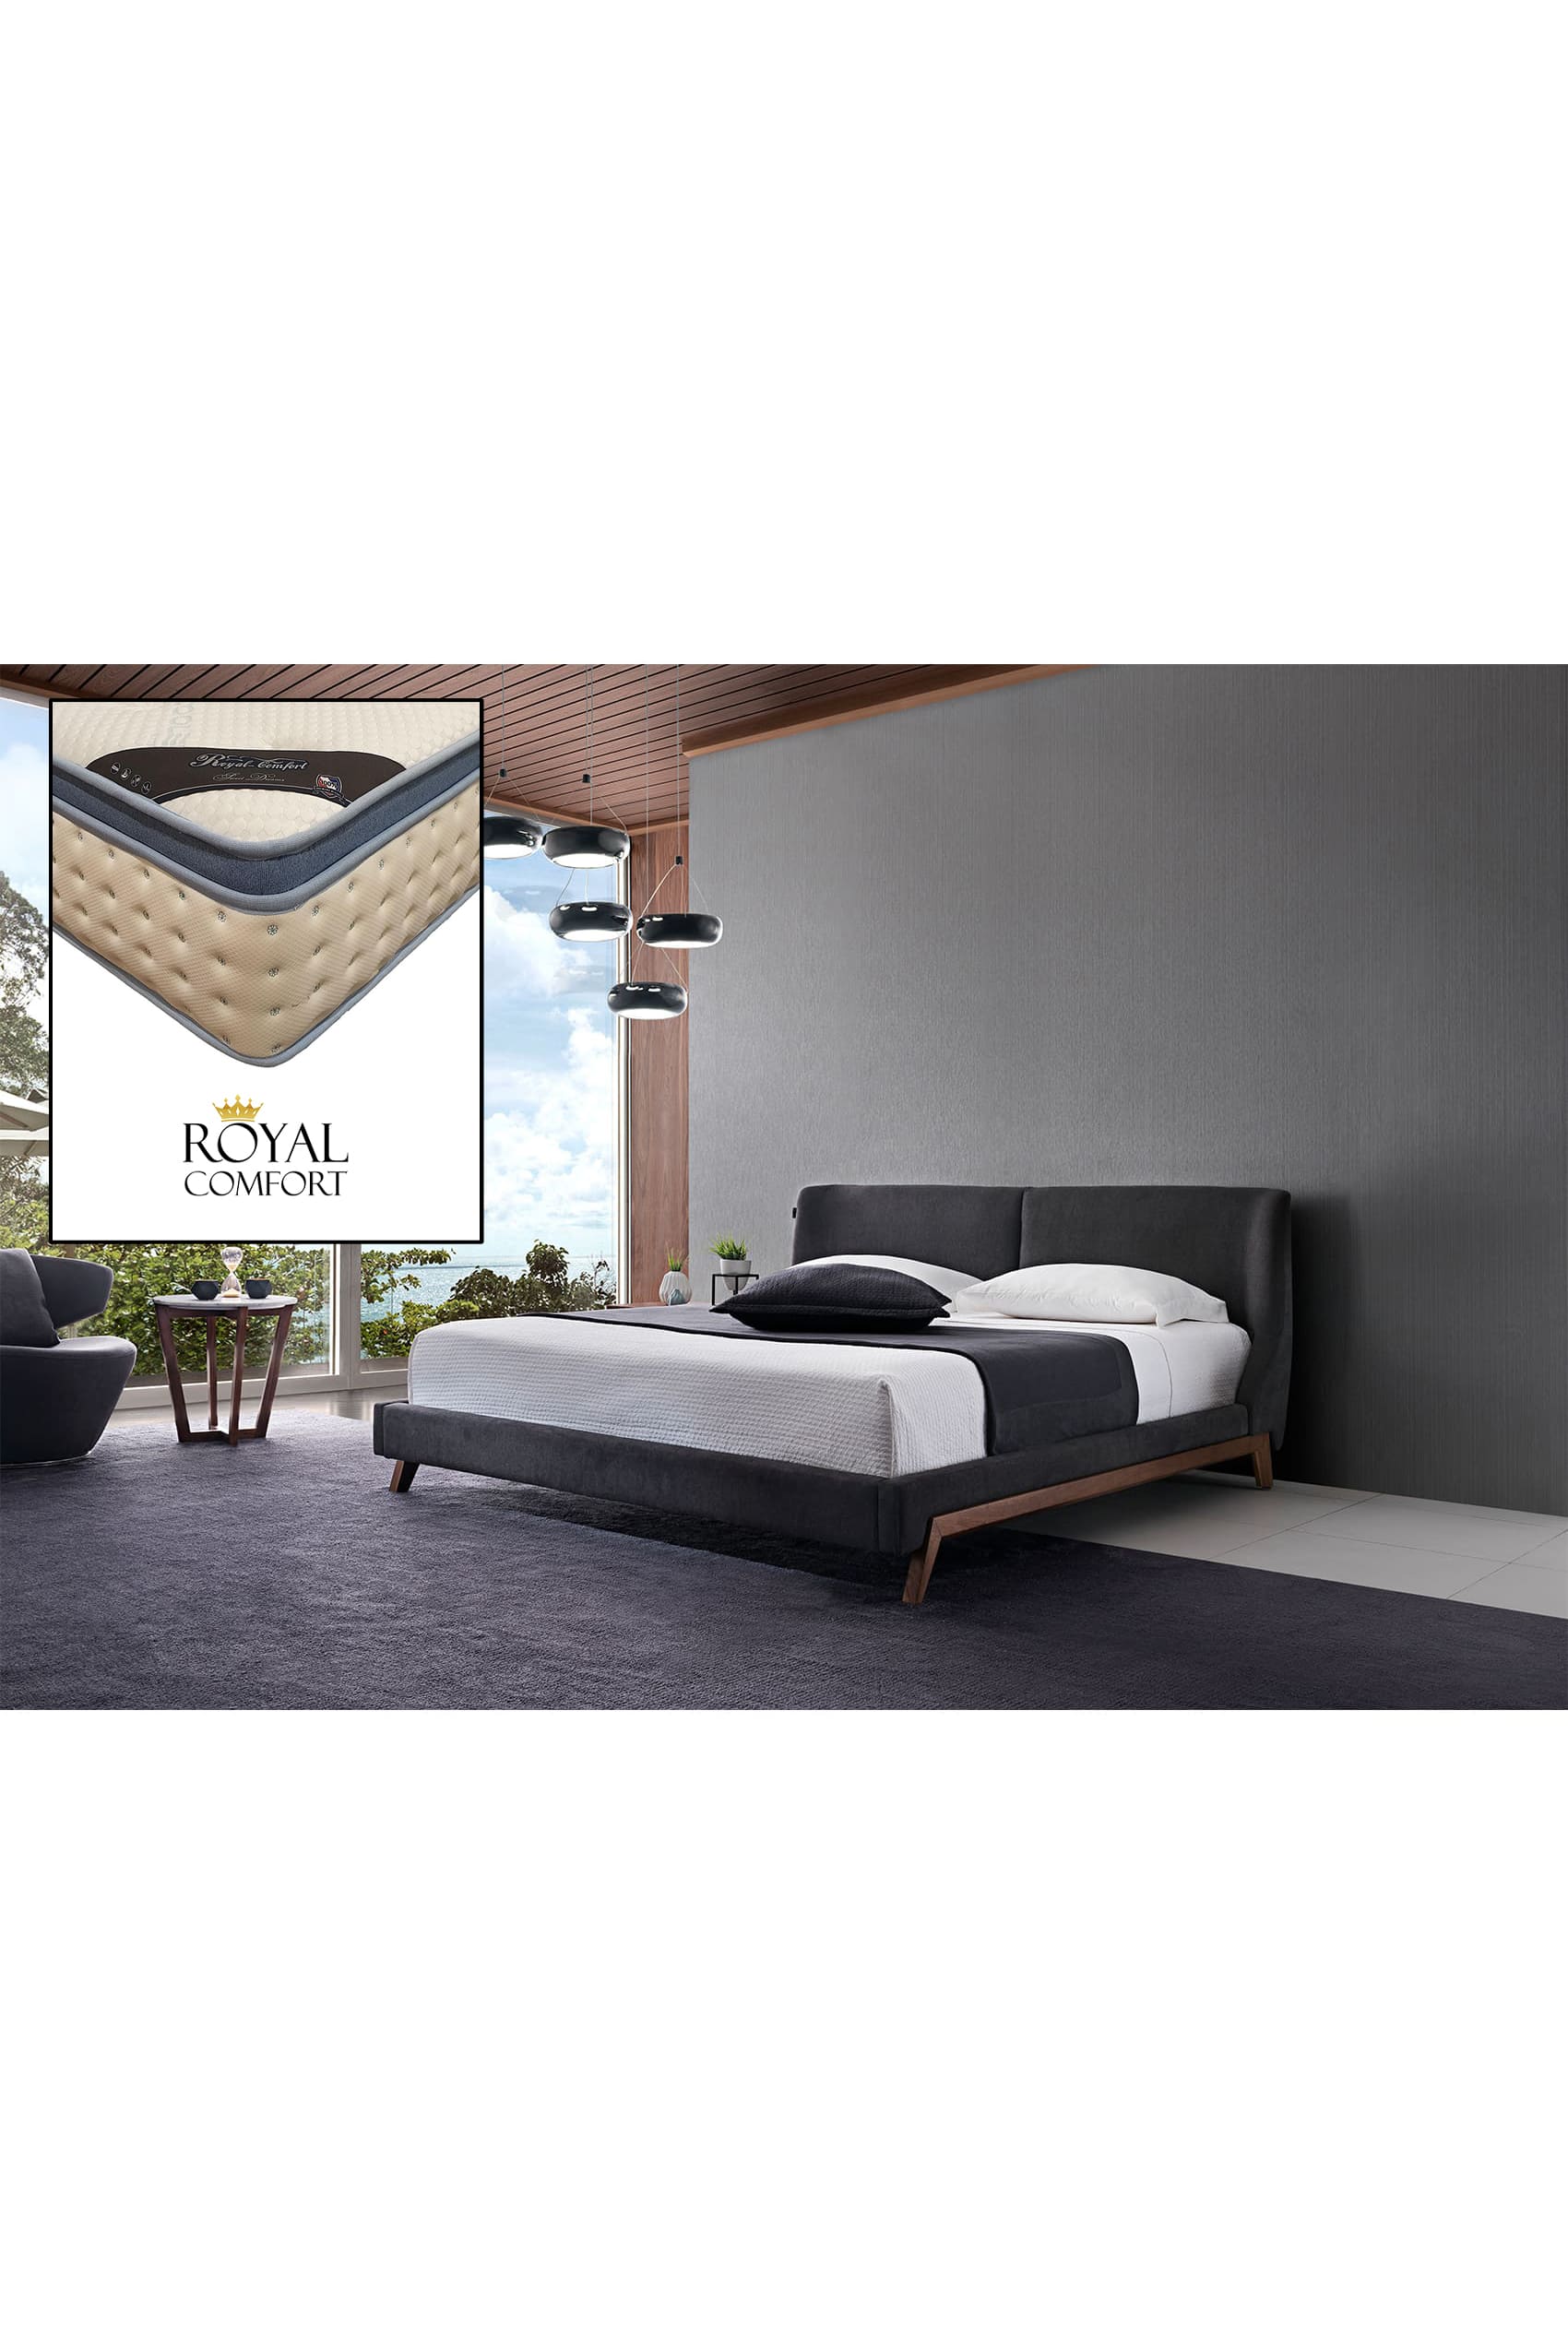 Sachi Designer Bed Frame + Royal Comfort Mattress